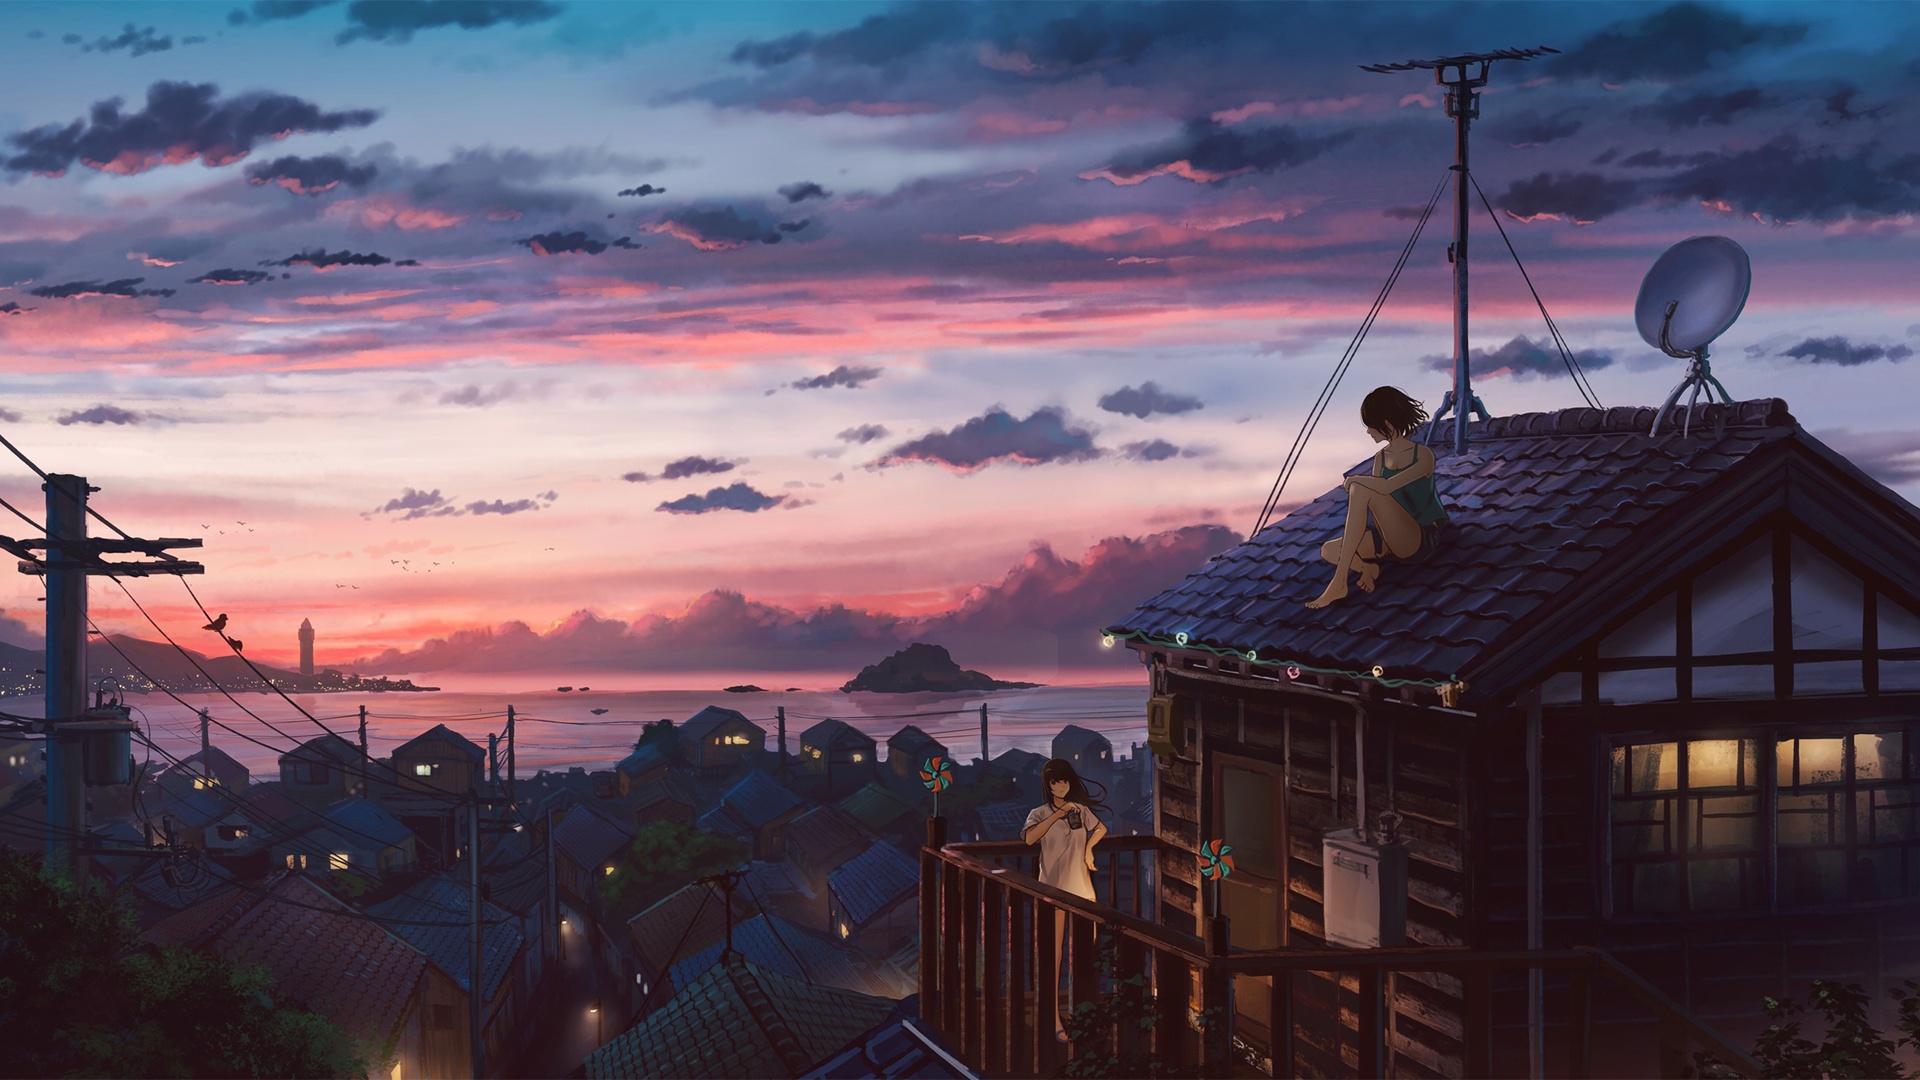 海边的小镇 坐在屋顶的女孩 唯美动漫风景壁纸壁纸